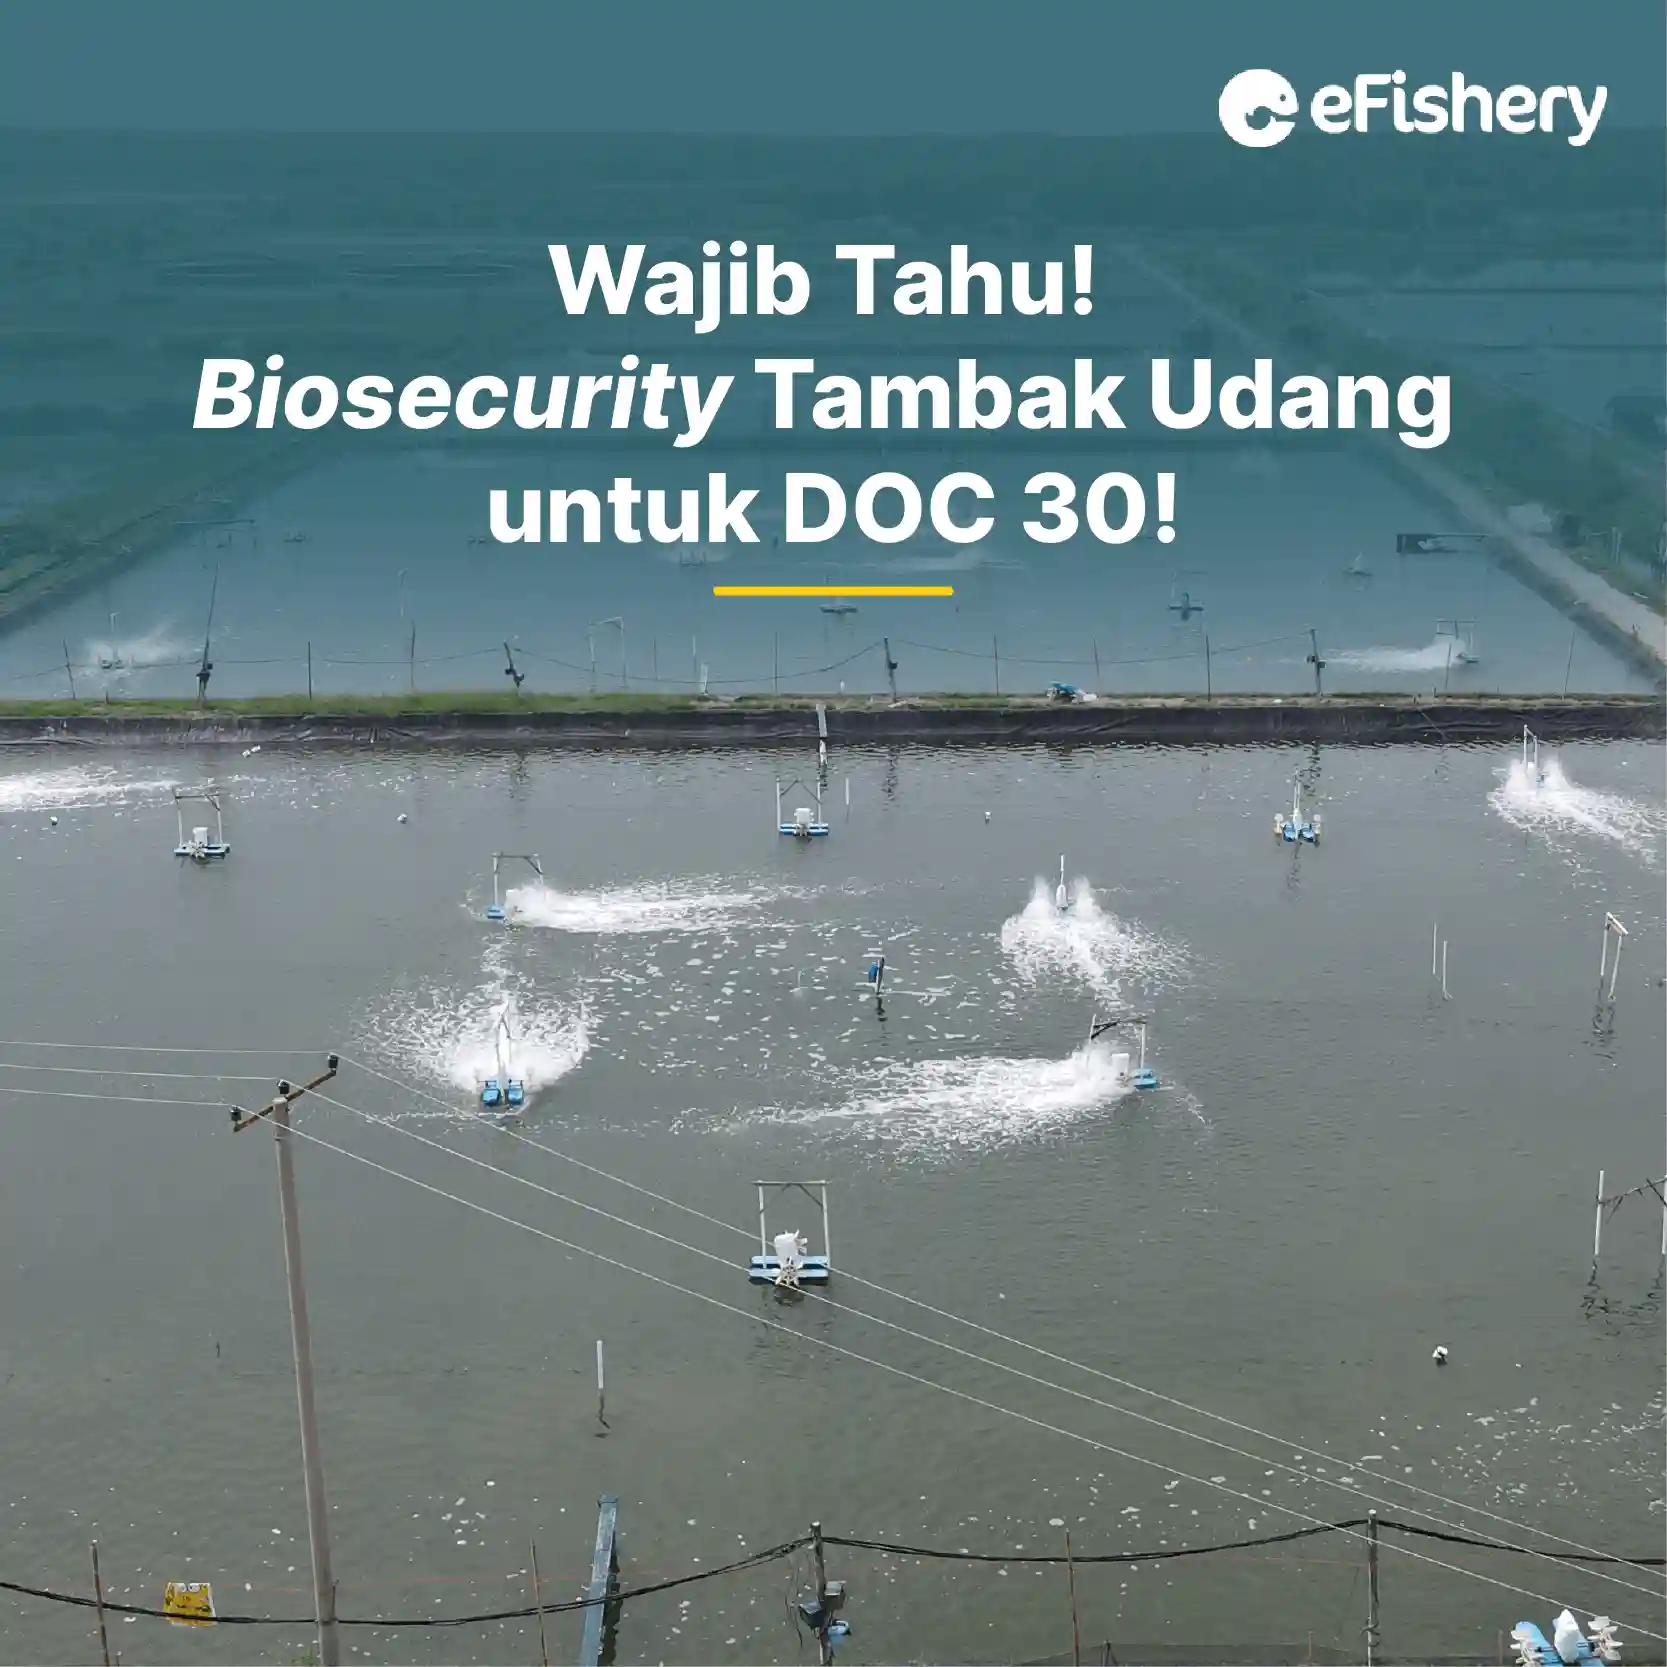 biosecurity tambak udang doc 30